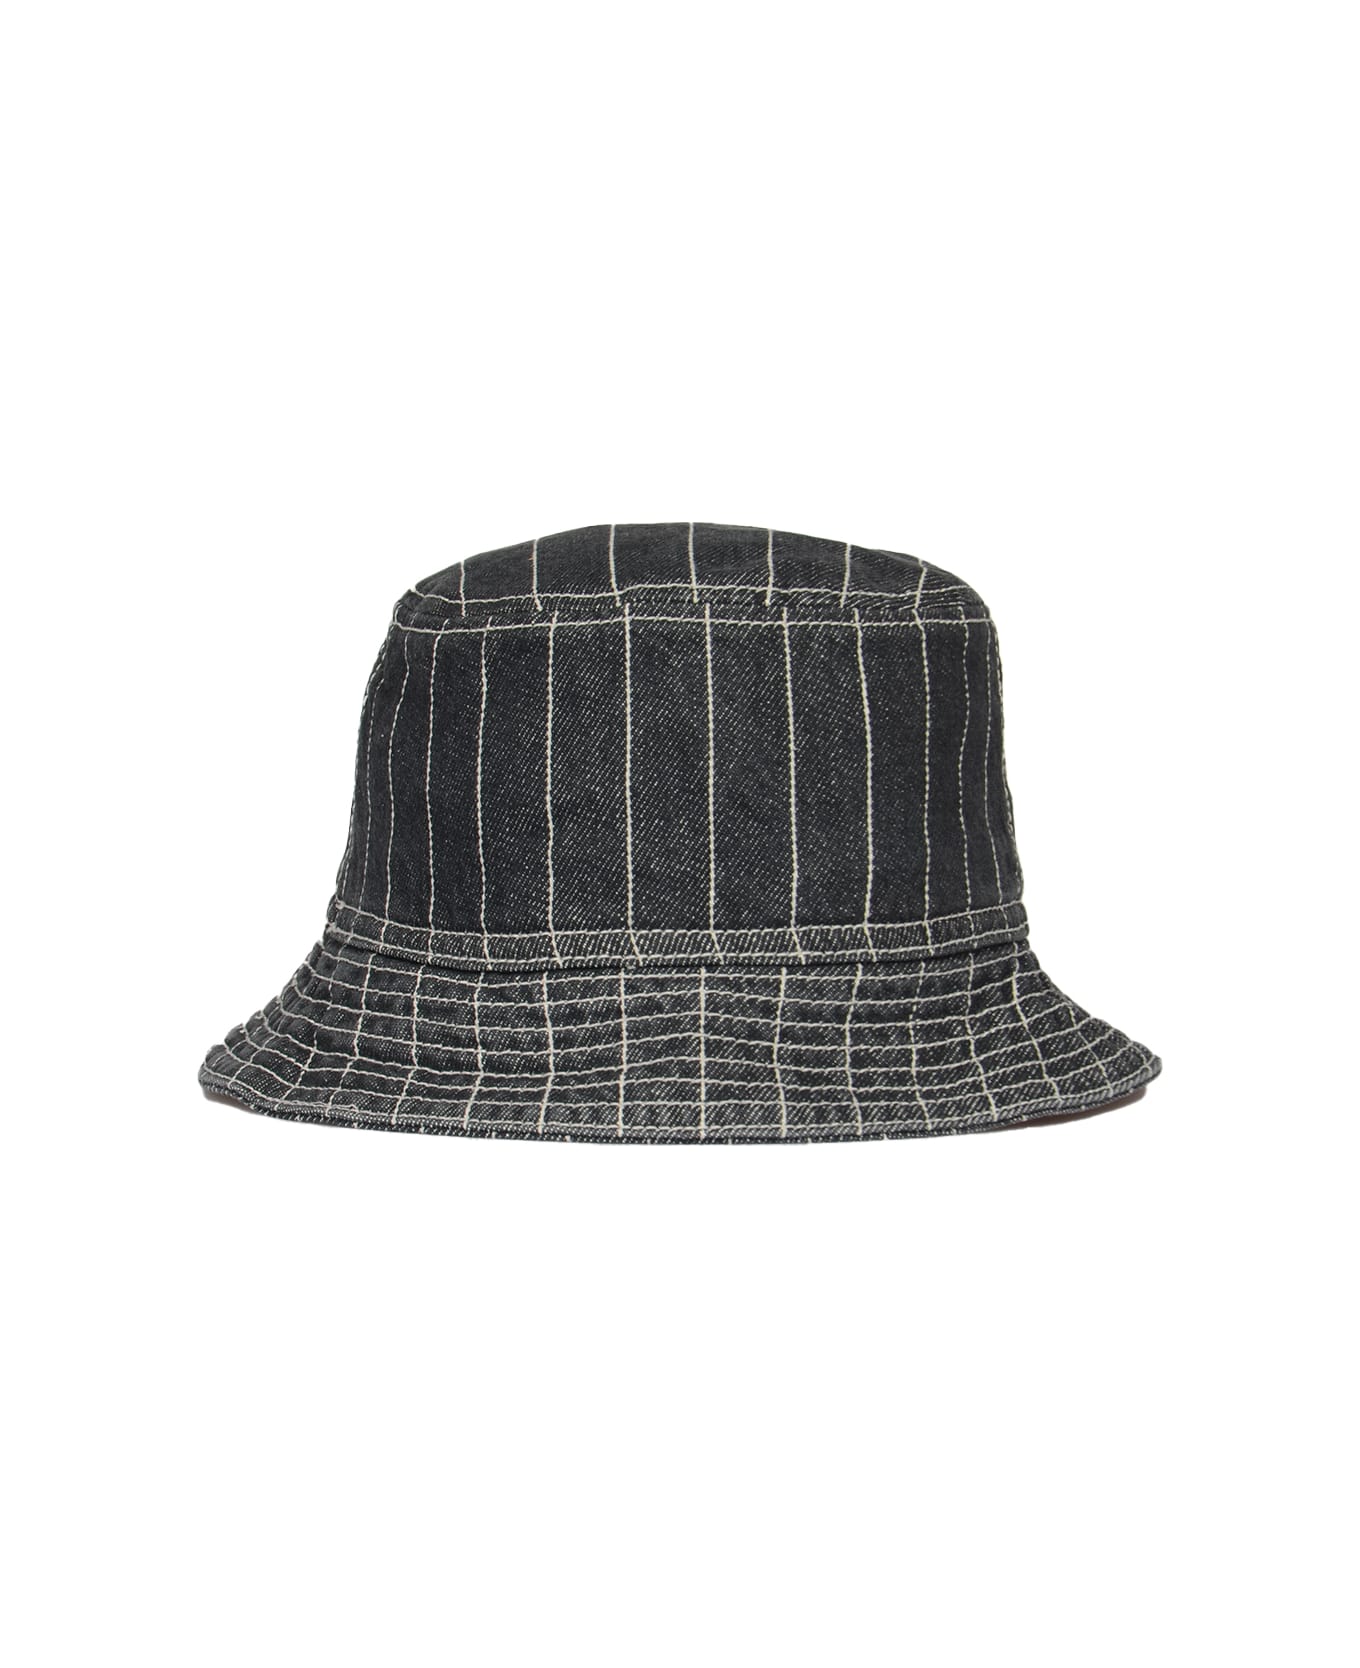 Carhartt Orlean Bucket Hat - ORLEAN STRIPE BLACK WHITE